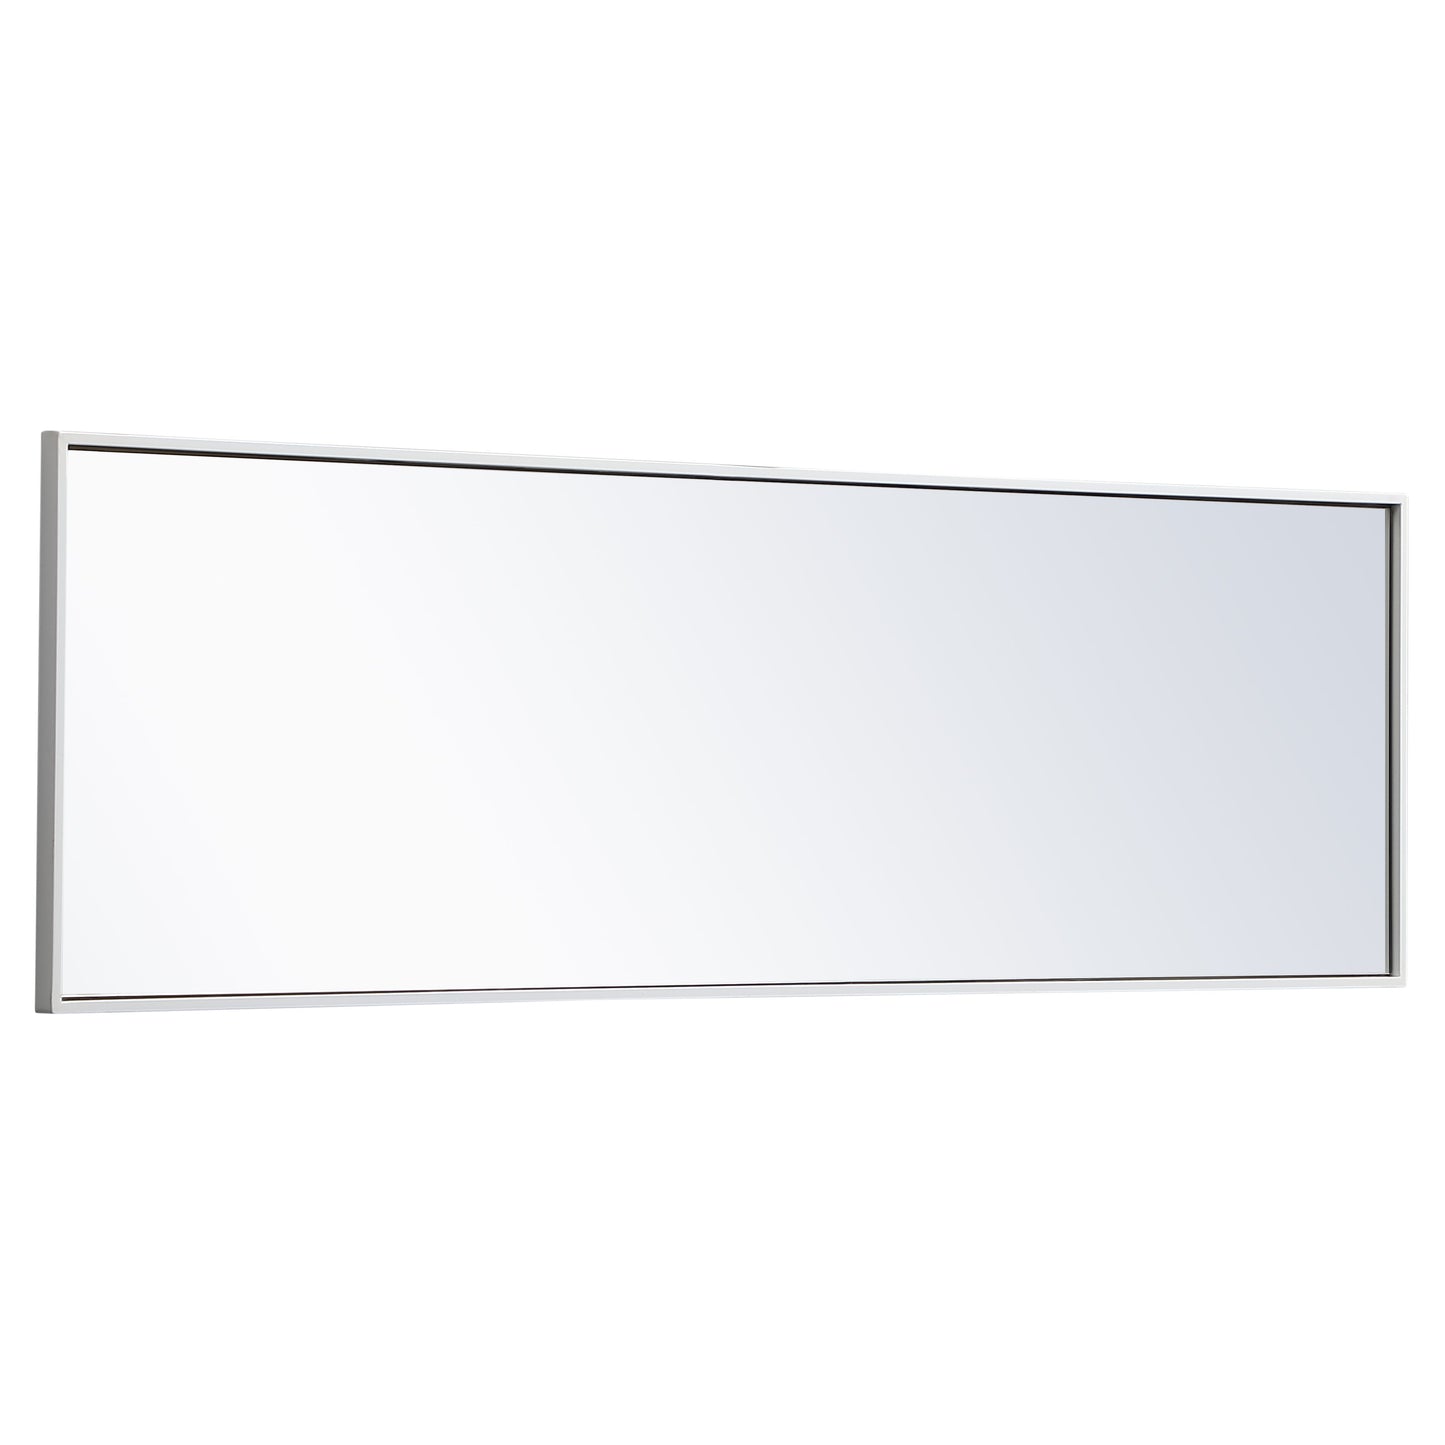 MR4081WH Monet 18" x 60" Metal Framed Rectangular Mirror in White